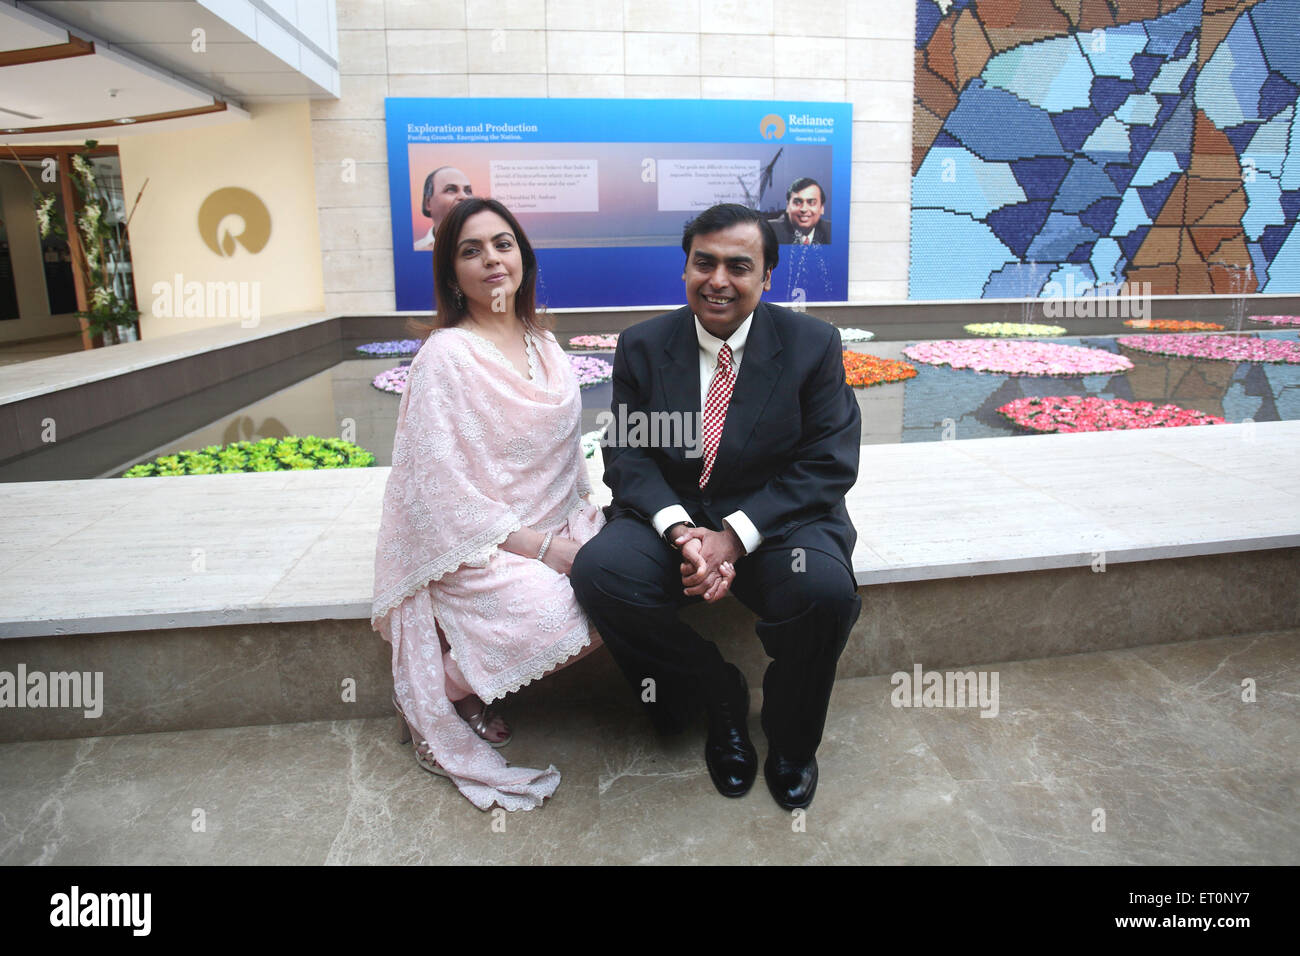 Mukesh Dhirubhai Ambani, Indian billionaire businessman, Chairman and Managing Director of Reliance Industries with wife Nita Mukesh Ambani, India Stock Photo